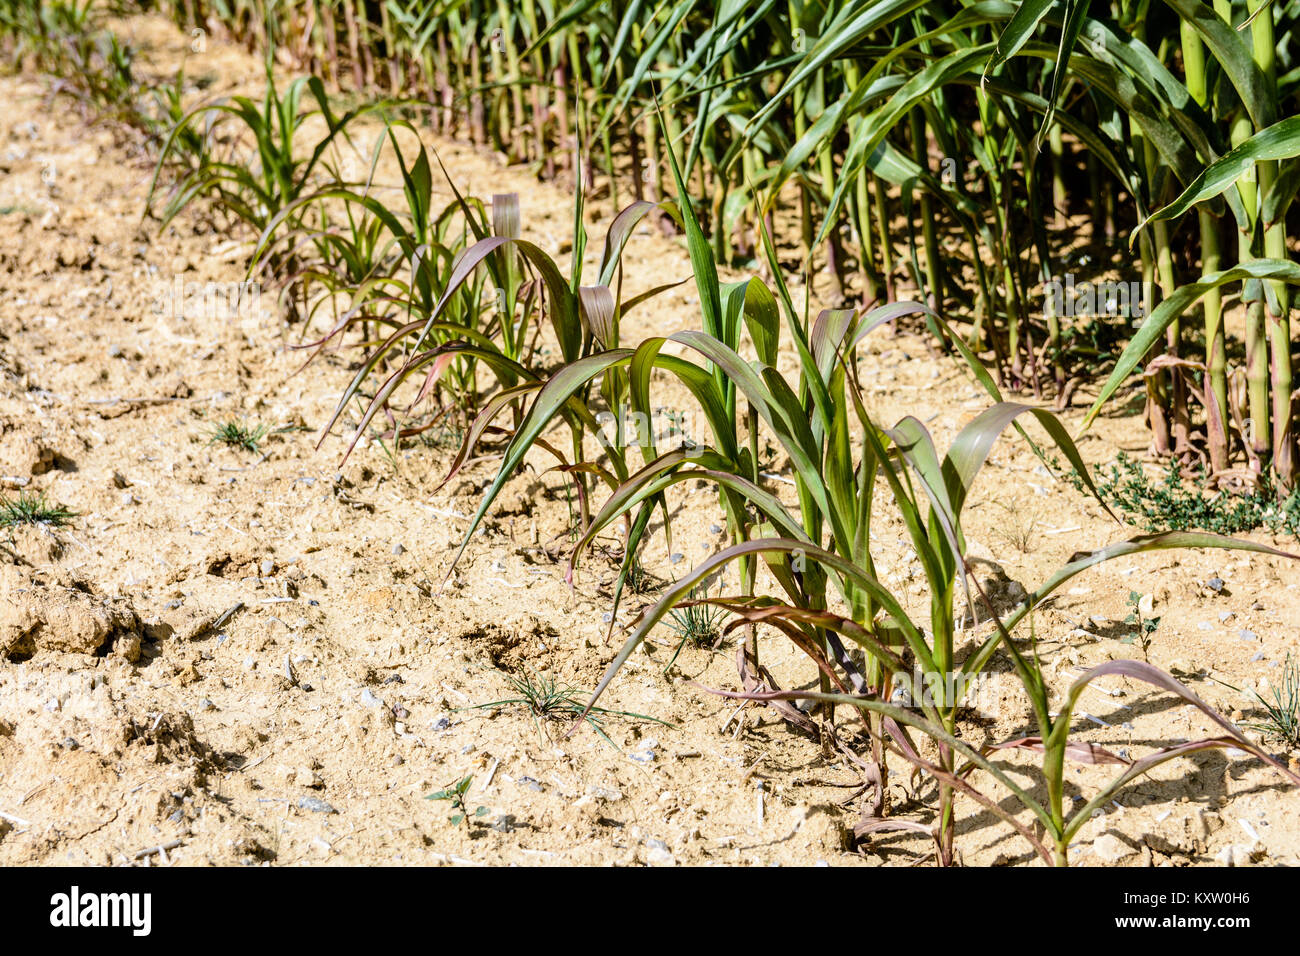 Fila de maíz poco desarrolladas en tierra seca. Foto de stock